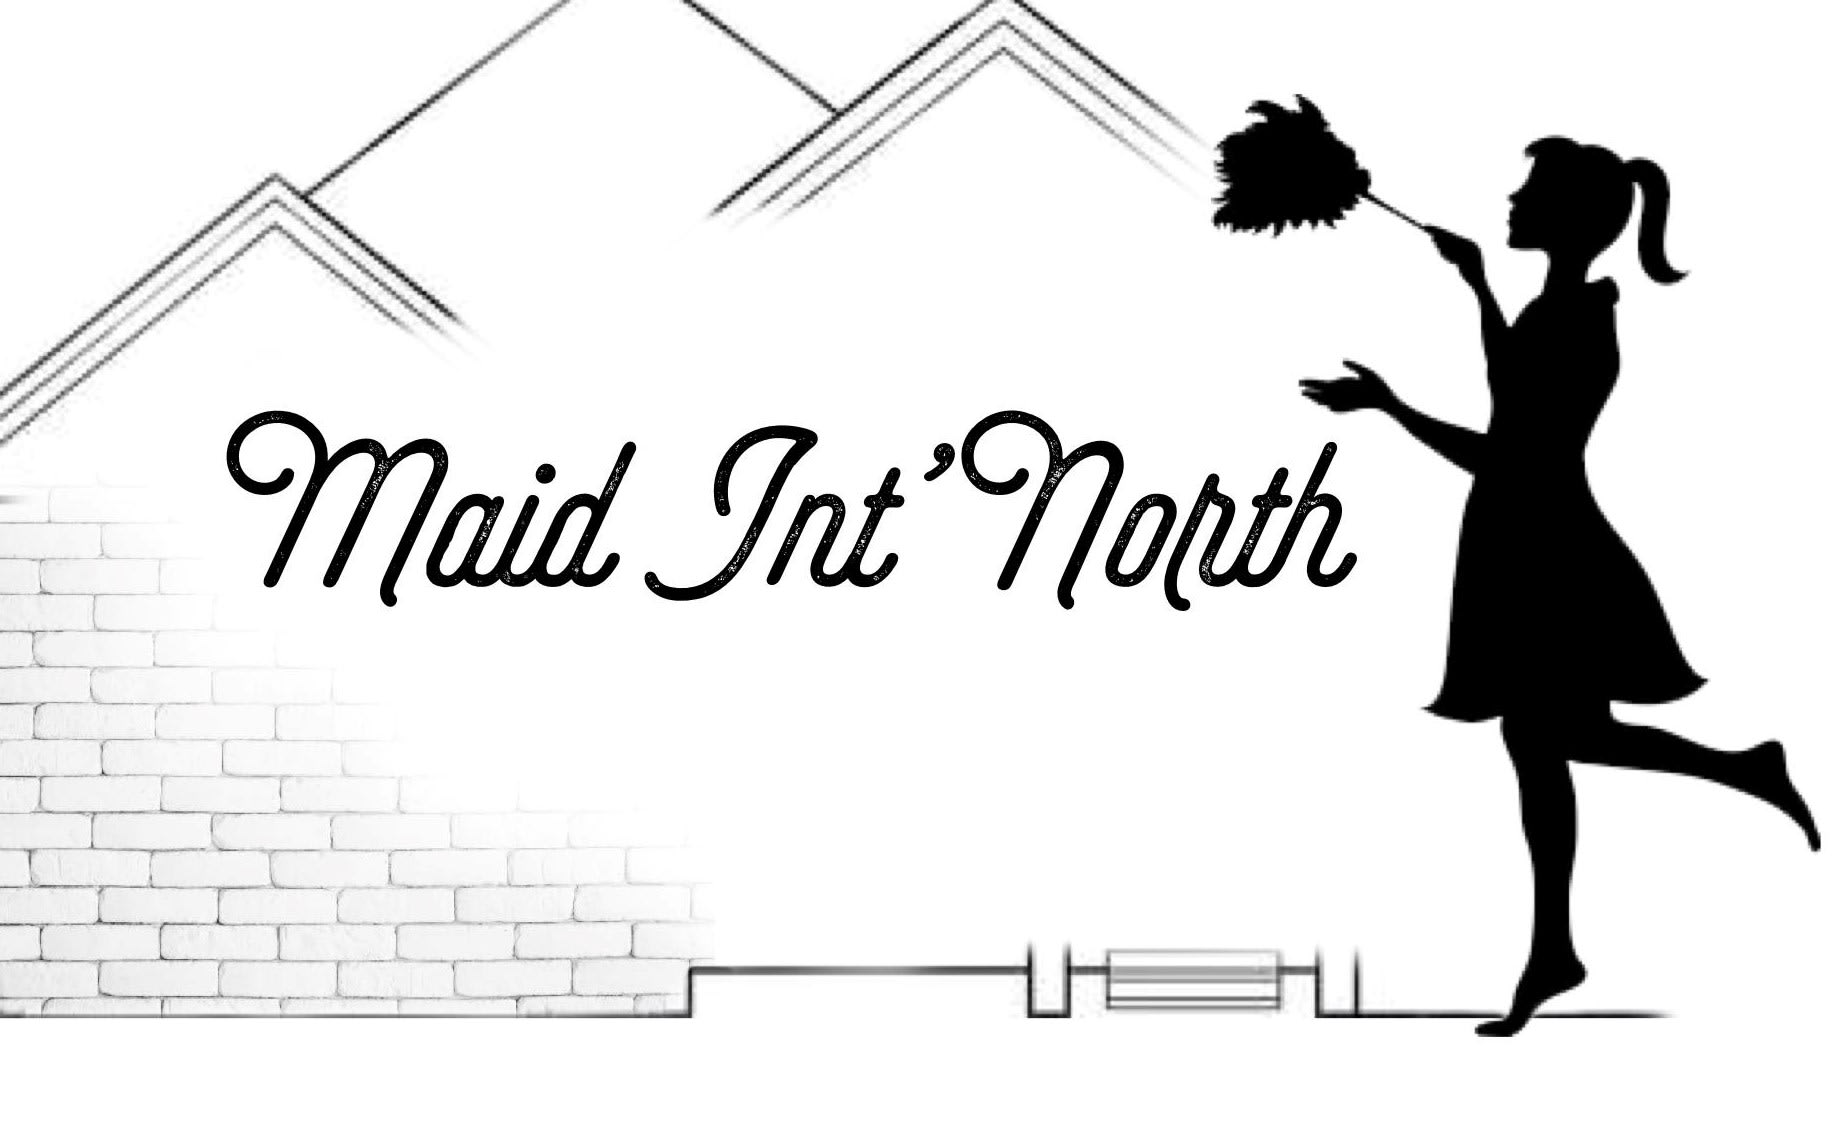 Maid Int' North